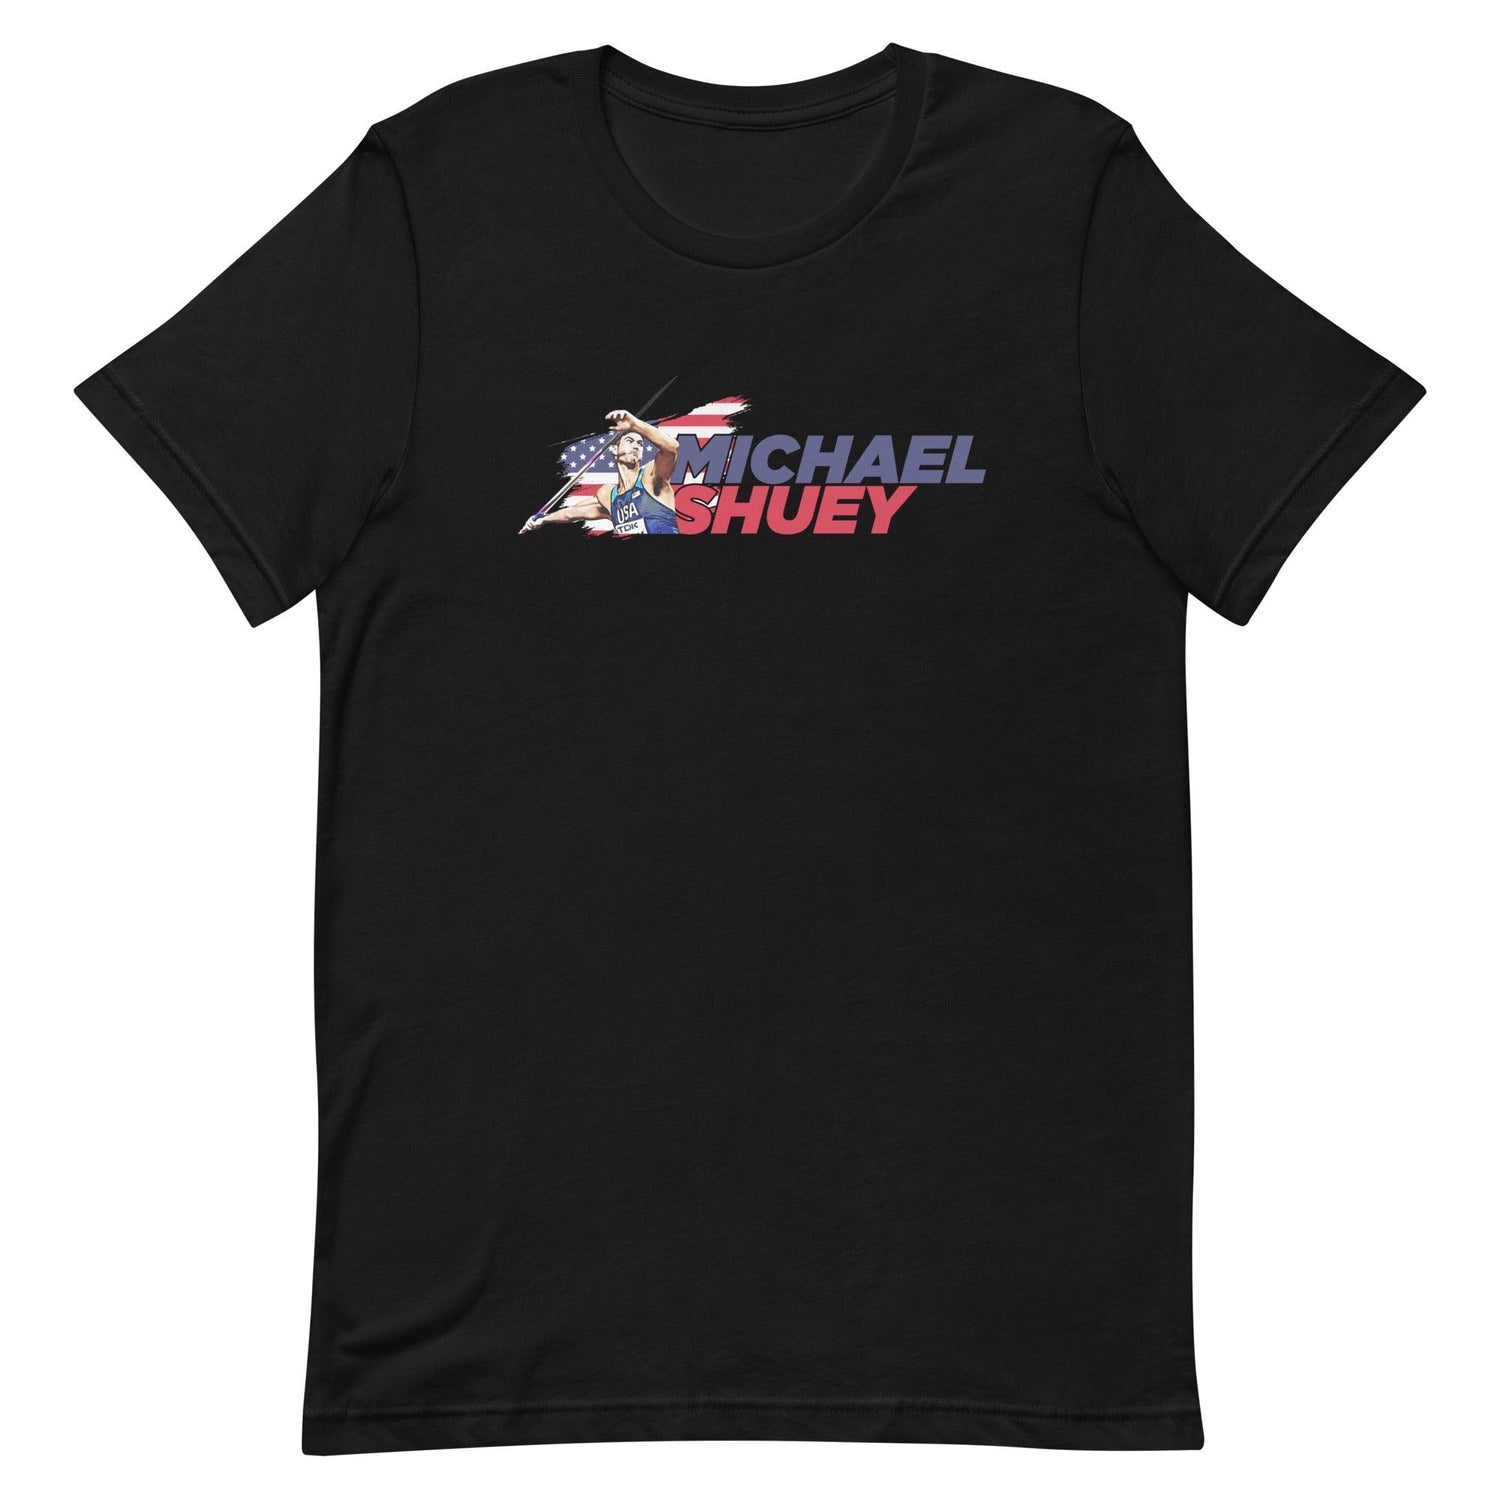 Michael Shuey “Essential” t-shirt - Fan Arch